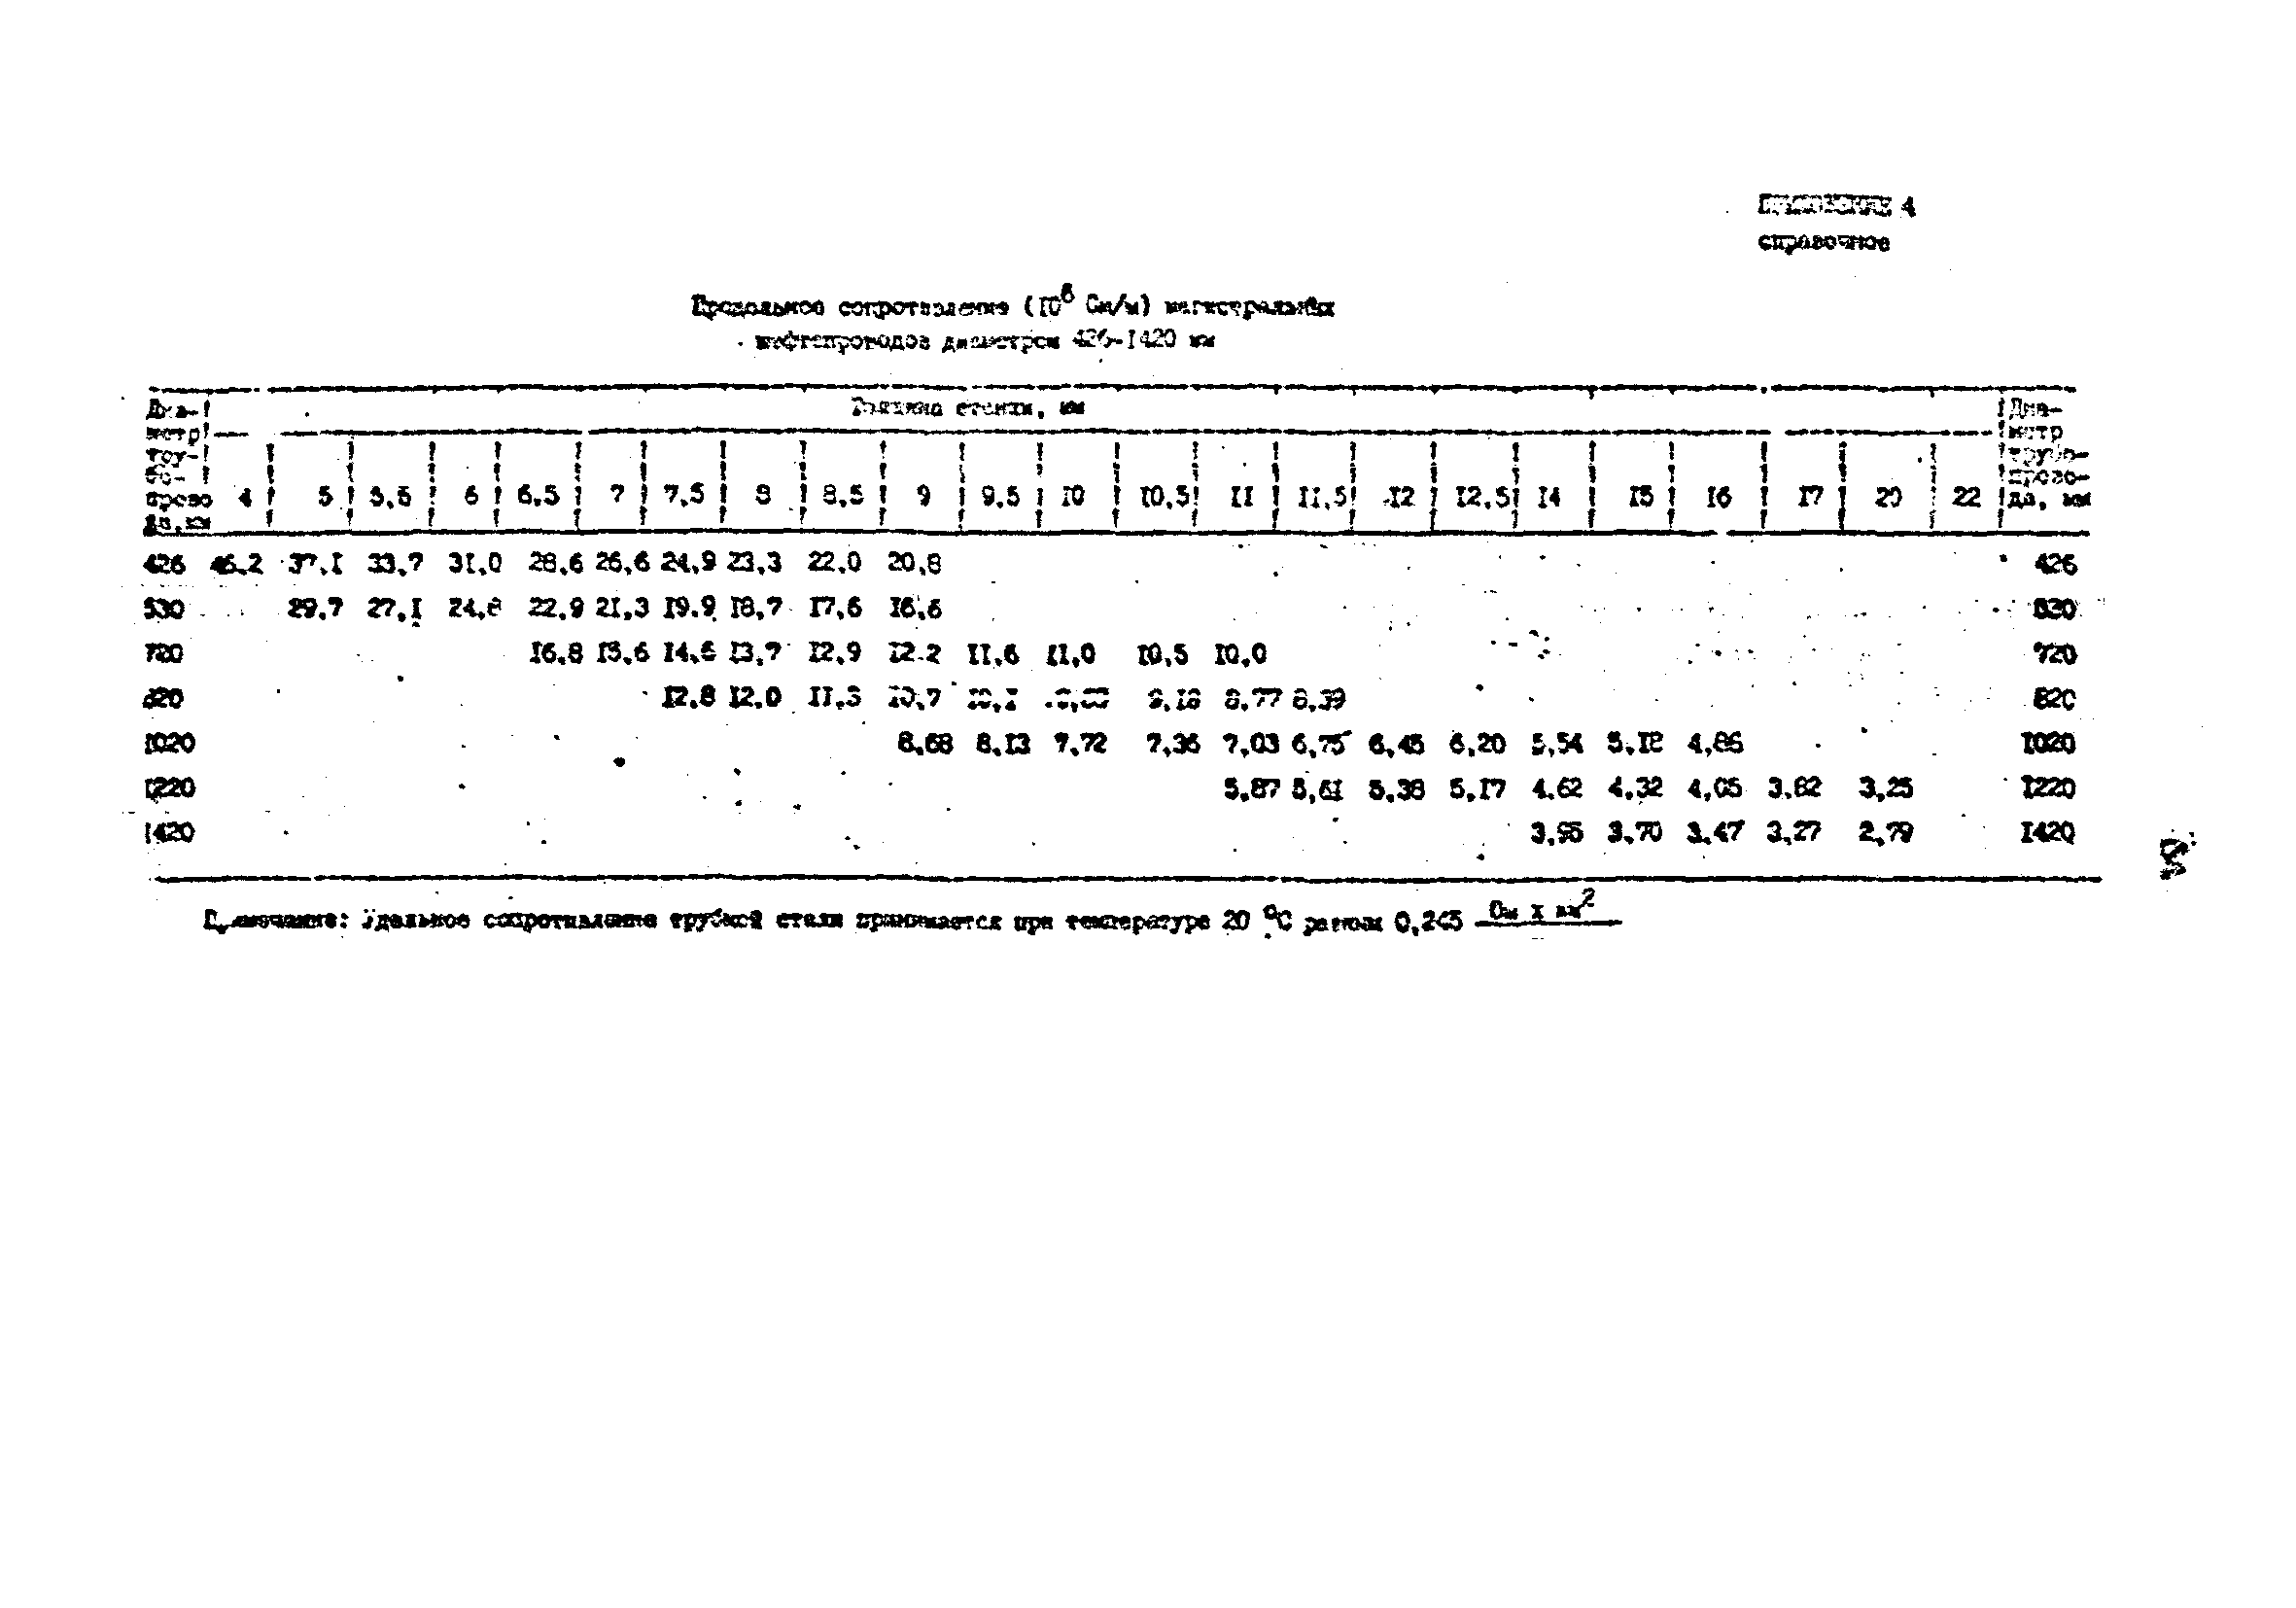 РД 39-30-1060-84